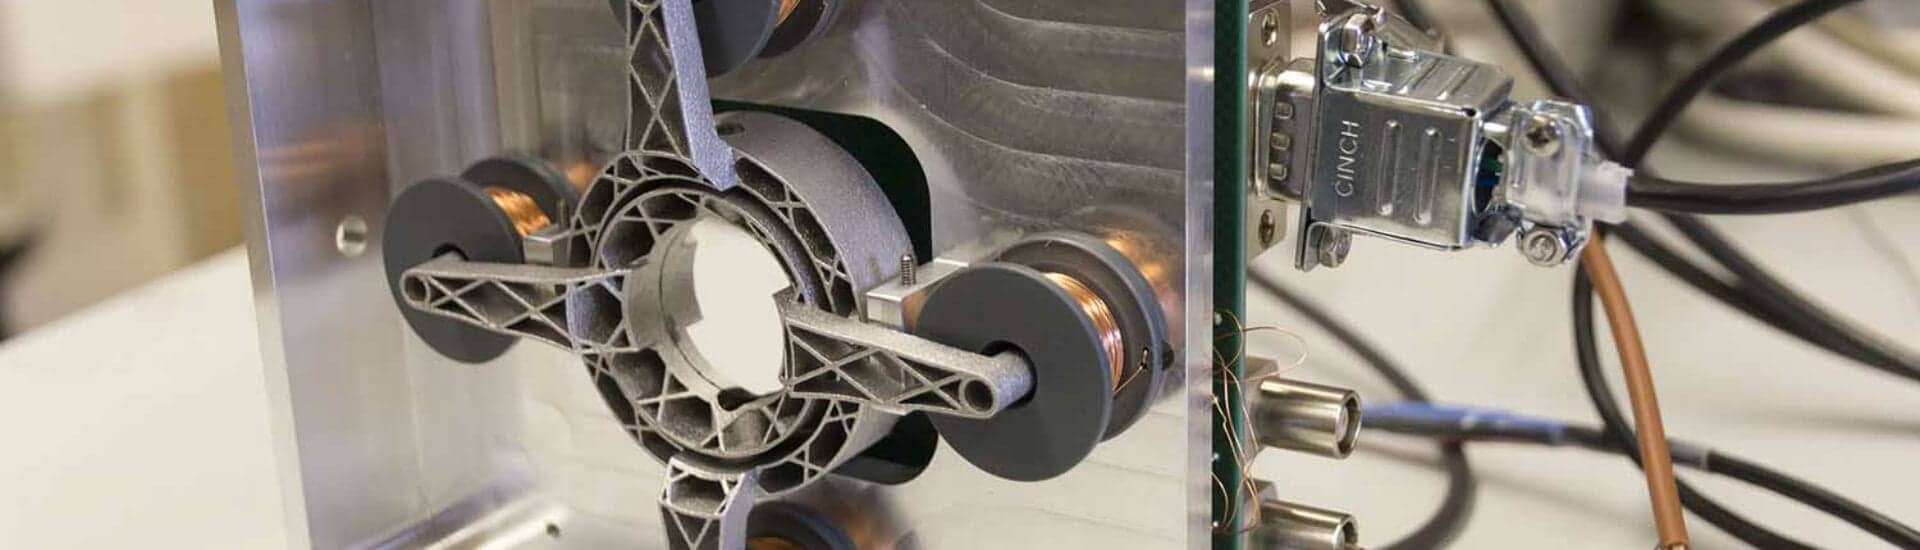 In opdracht van Nikhef werden 20 aluminium gimbals 3D geprint voor de European Gravitational Observatory bij Pisa.